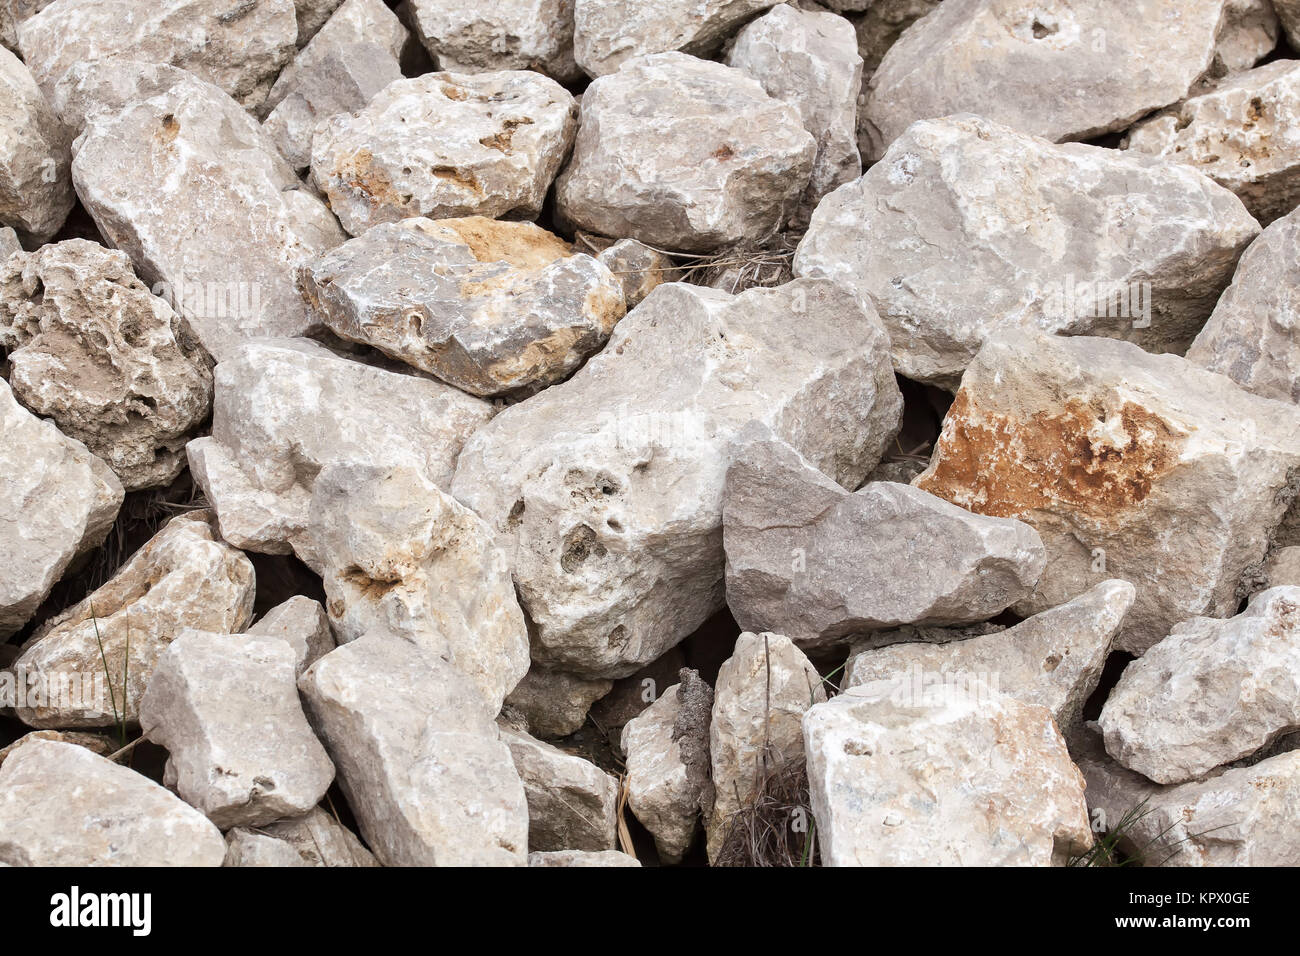 Ein Haufen Steine - Steinhaufen - Bruchsteine - Hintergrund - Textur Stock  Photo - Alamy